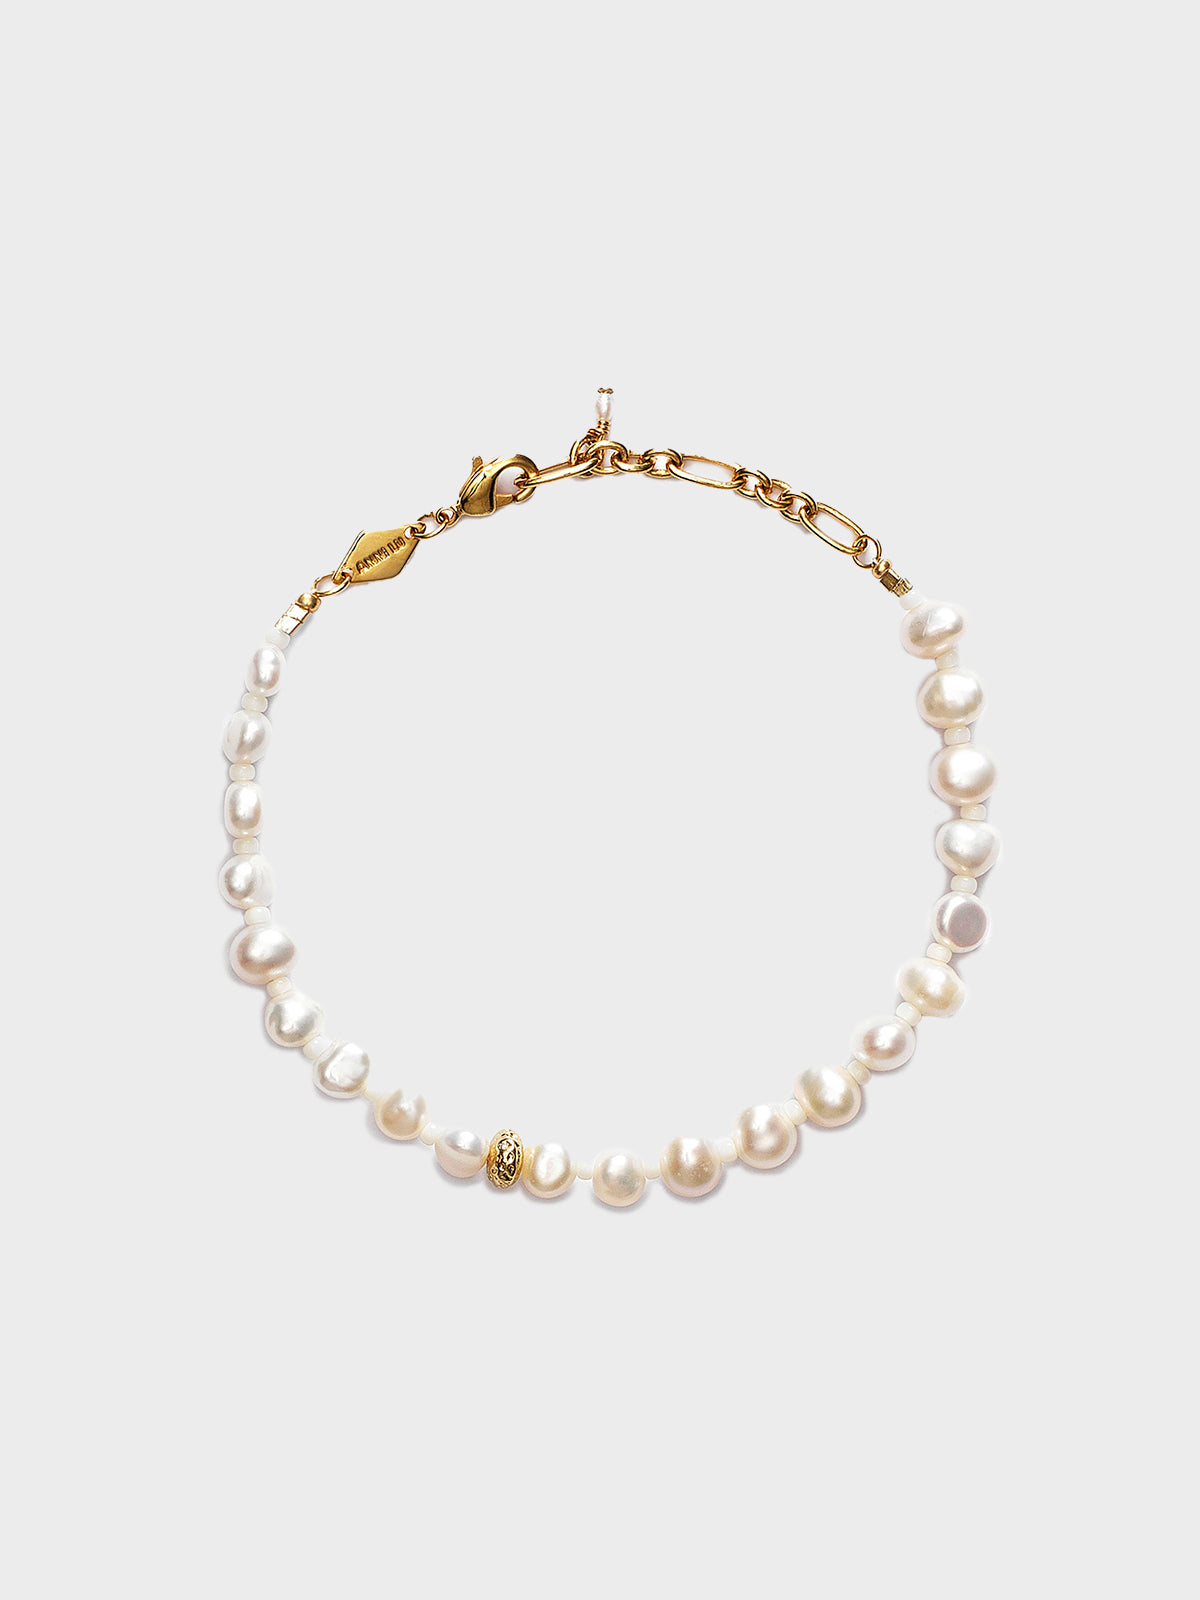 Anni Lu - Stellar Pearly Bracelet in Gold